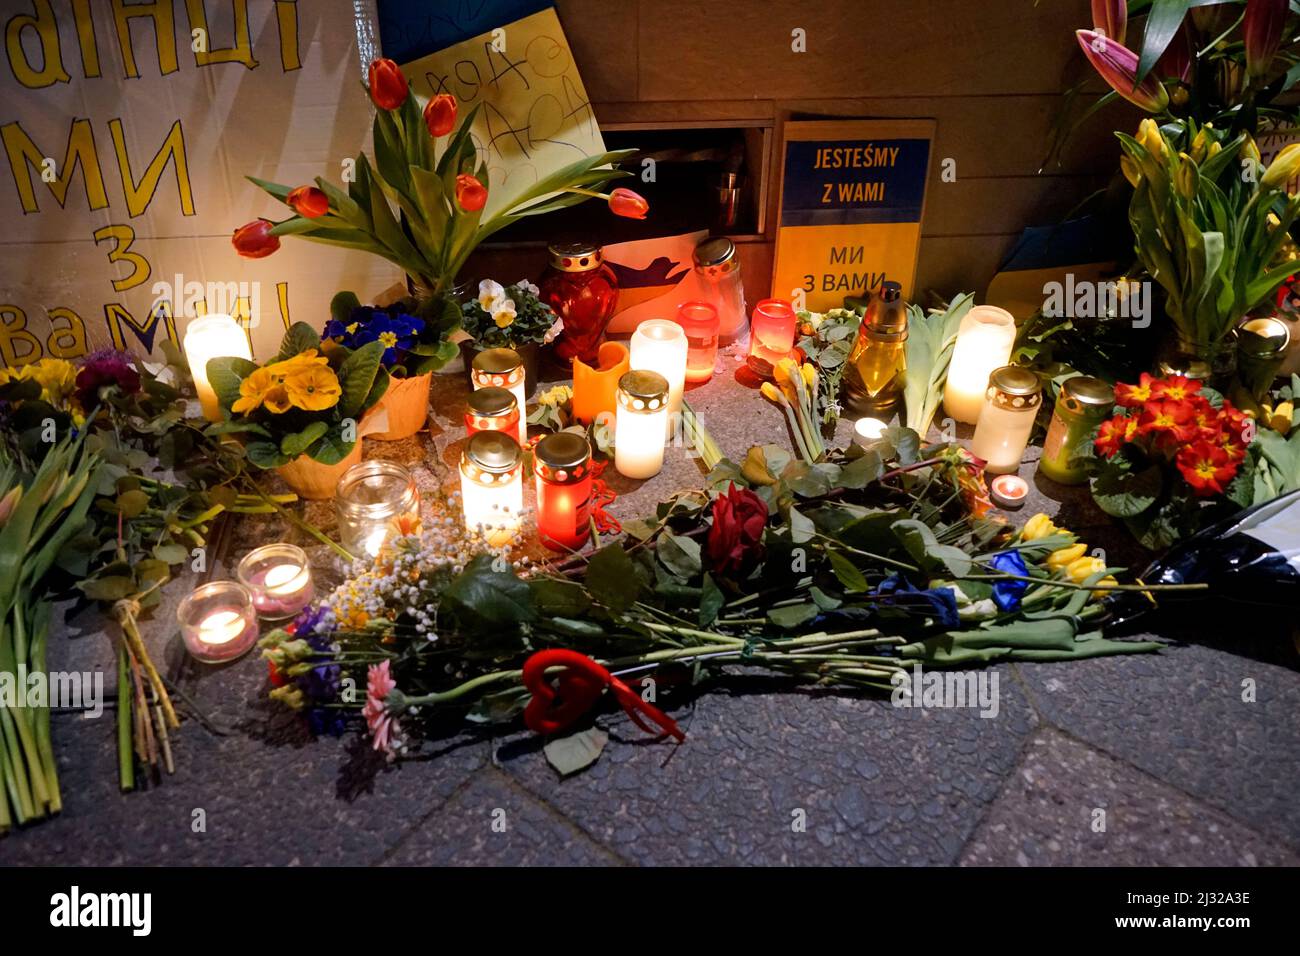 Blumen und Kerzen als Erinnerung an die getoeteten Ukrainer nach dem Ueberfall des Landes durch Russland vor der ukrainischen Botschaft/ flowers and c Stock Photo